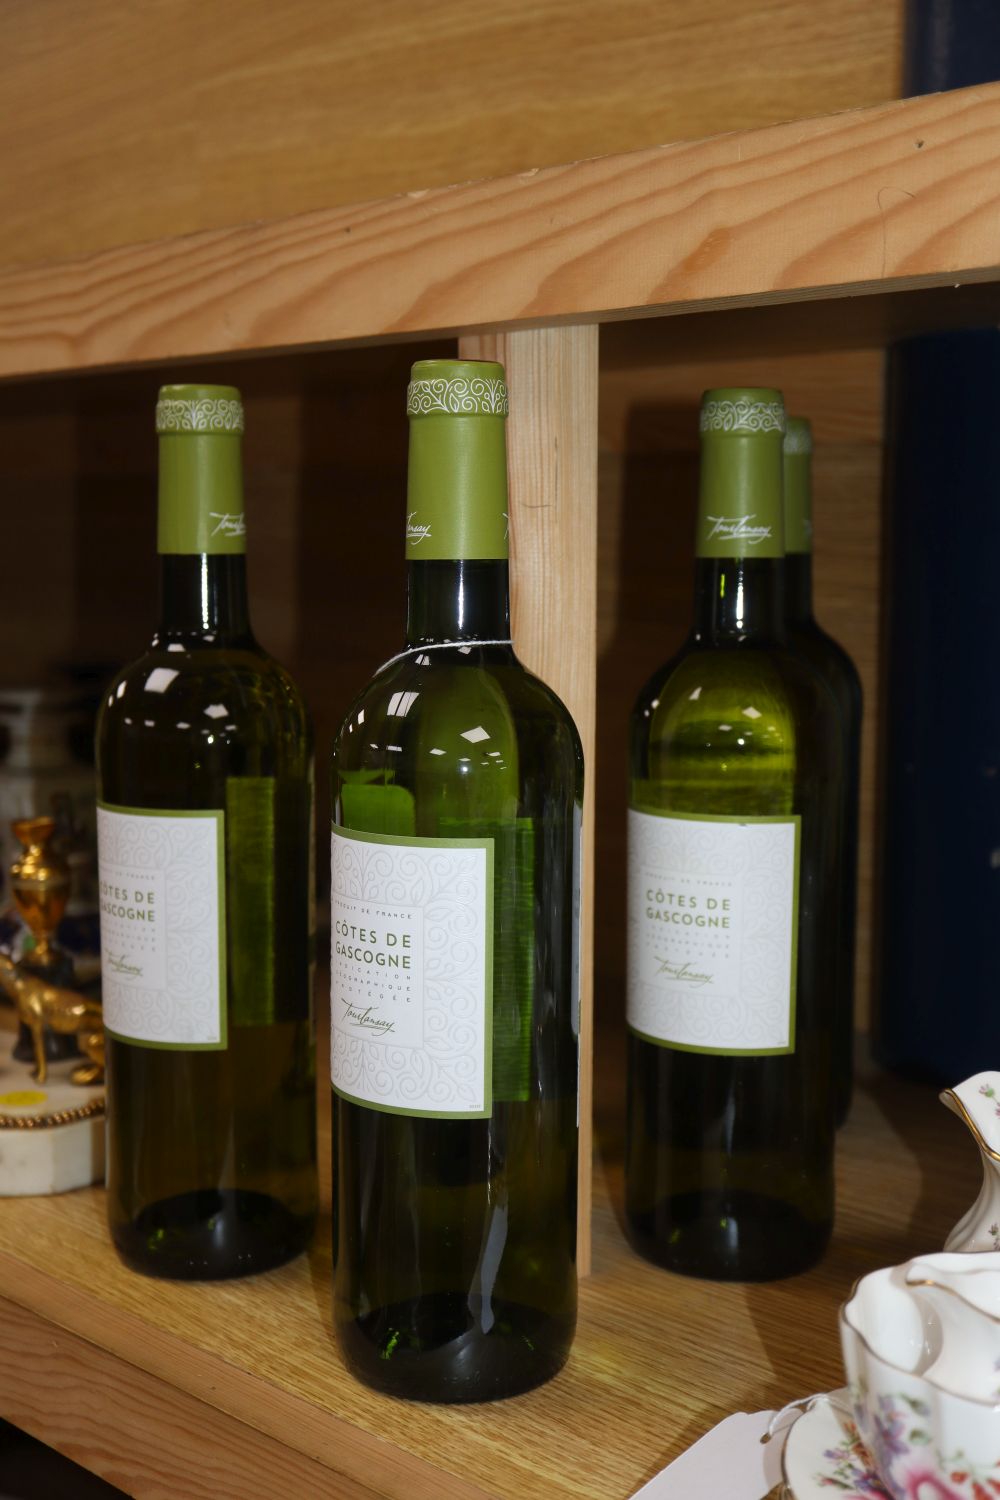 Five bottles of Cote de Gascogne